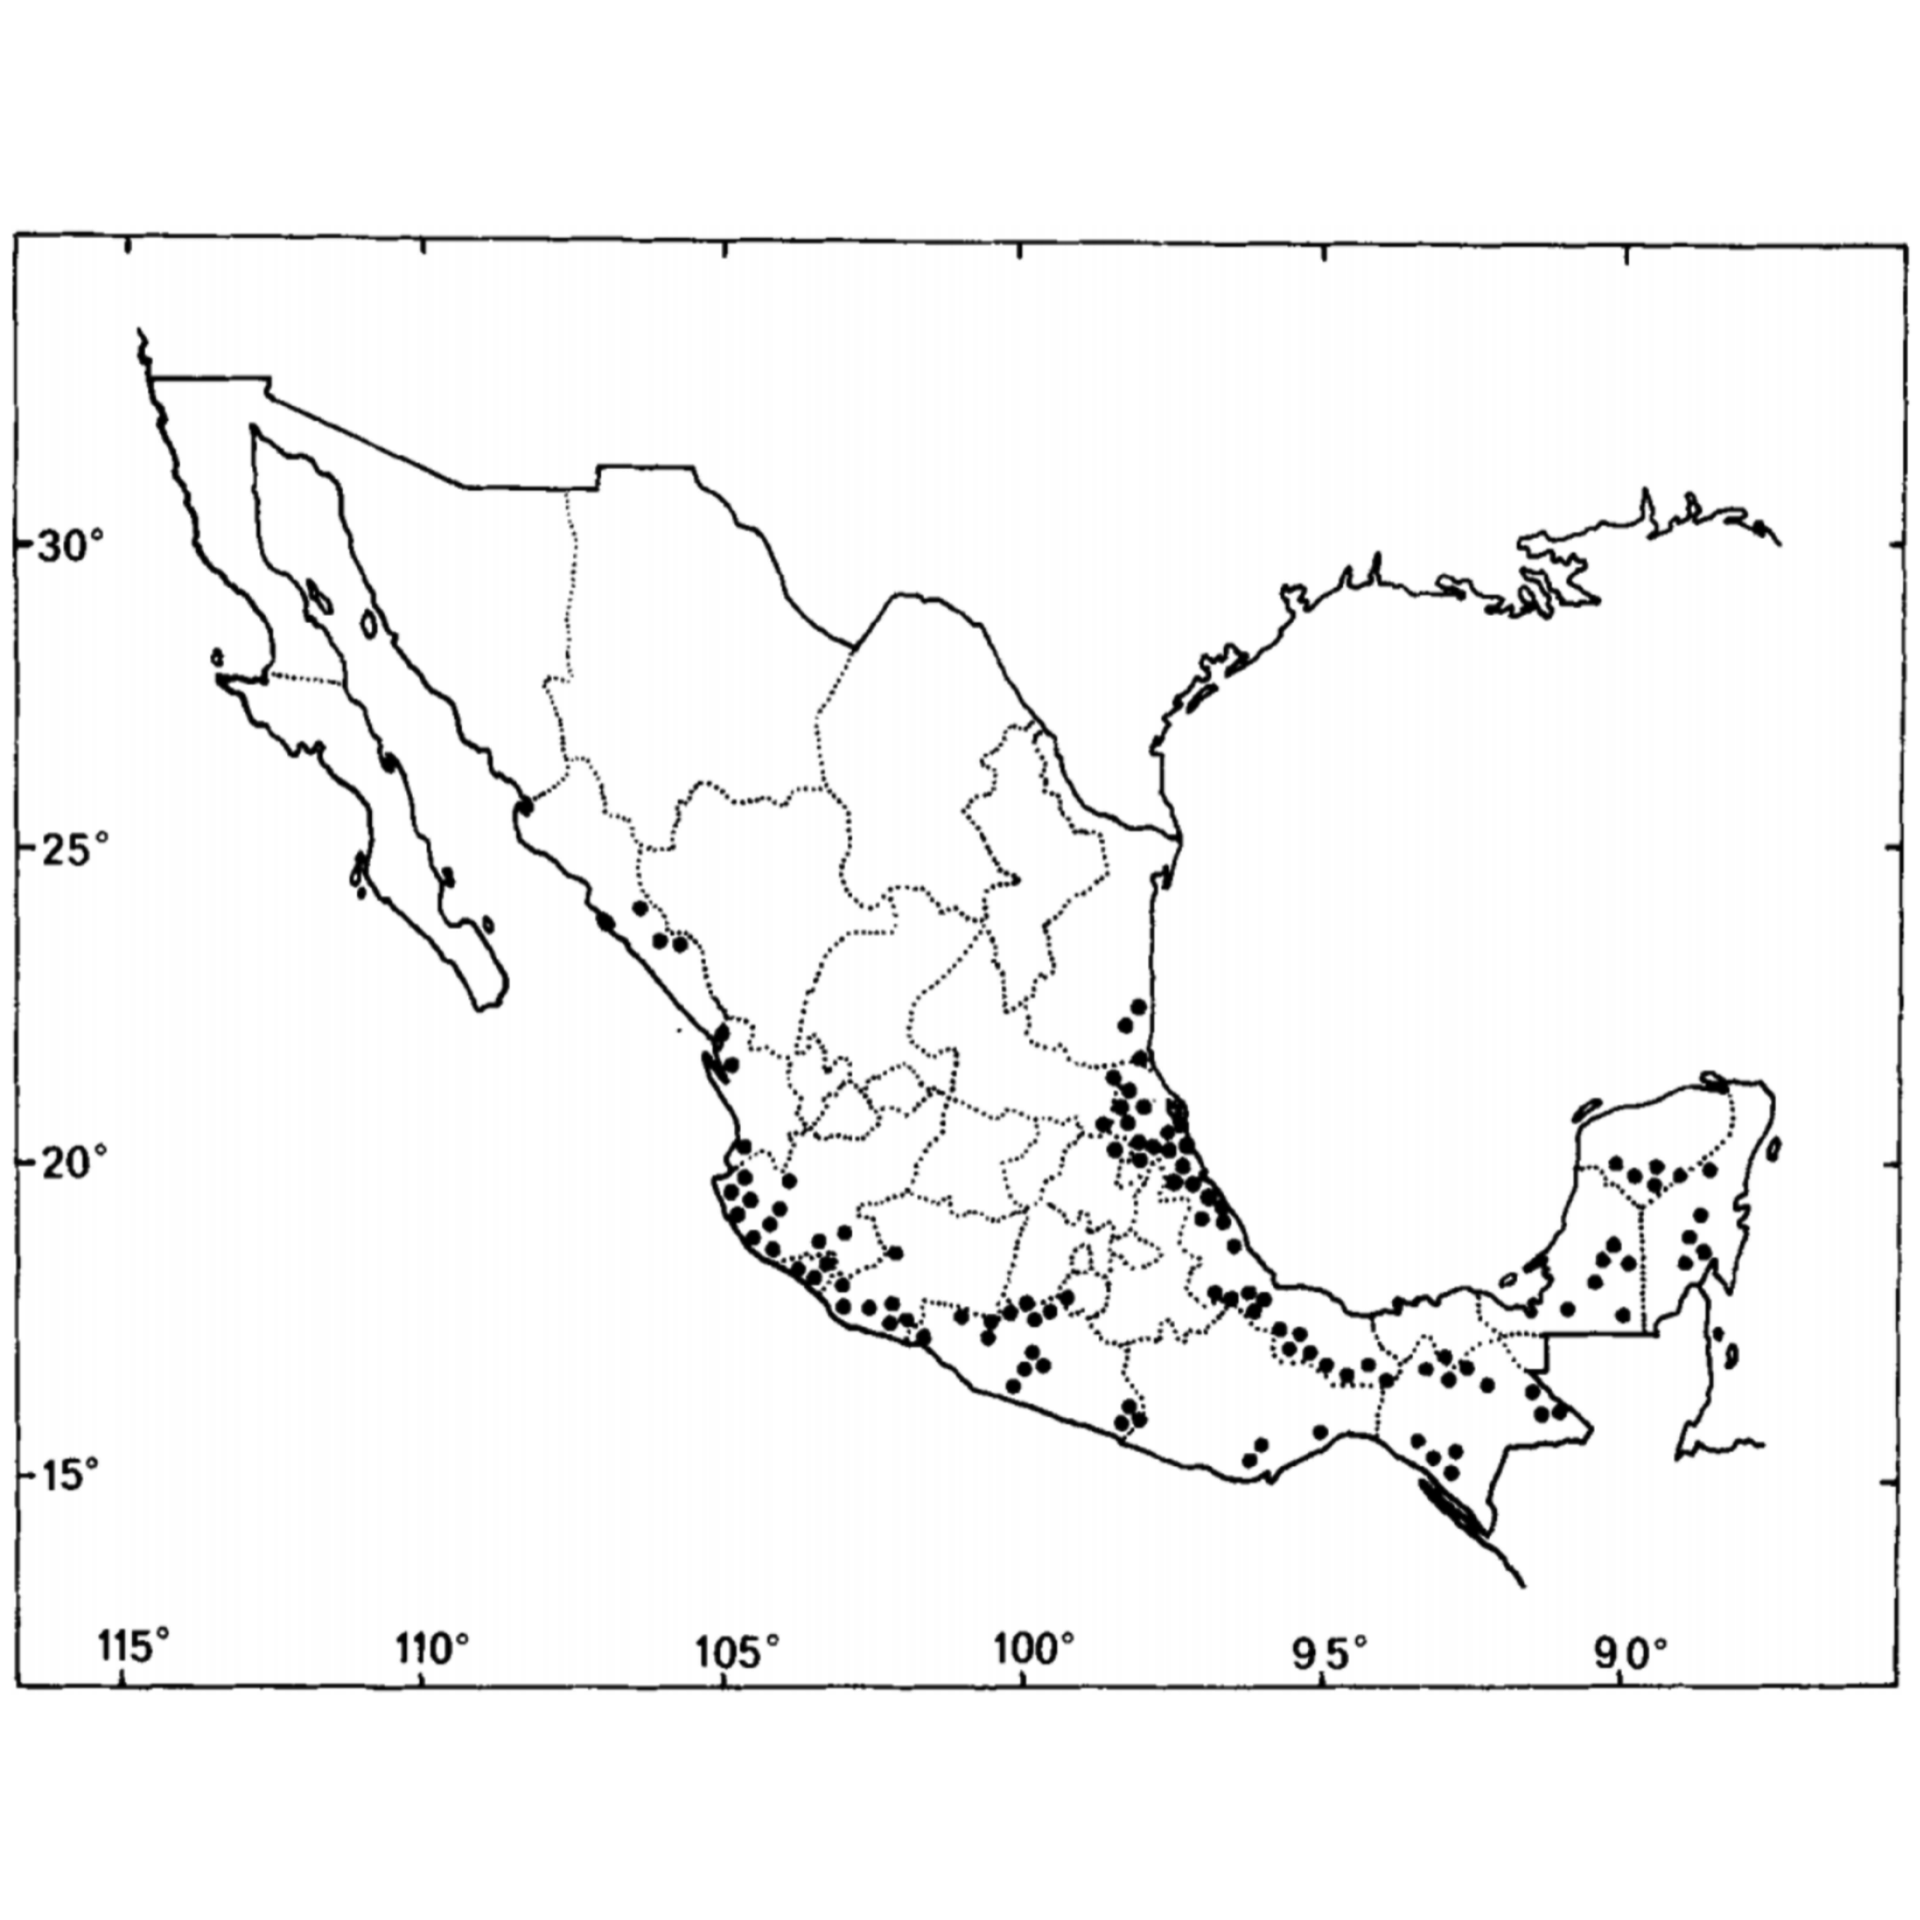 Distribución del árbol de ramón en México (Brosimum alicastrum Sw.). Fuente: (Peters & Pardo-Tejeda, 1982).